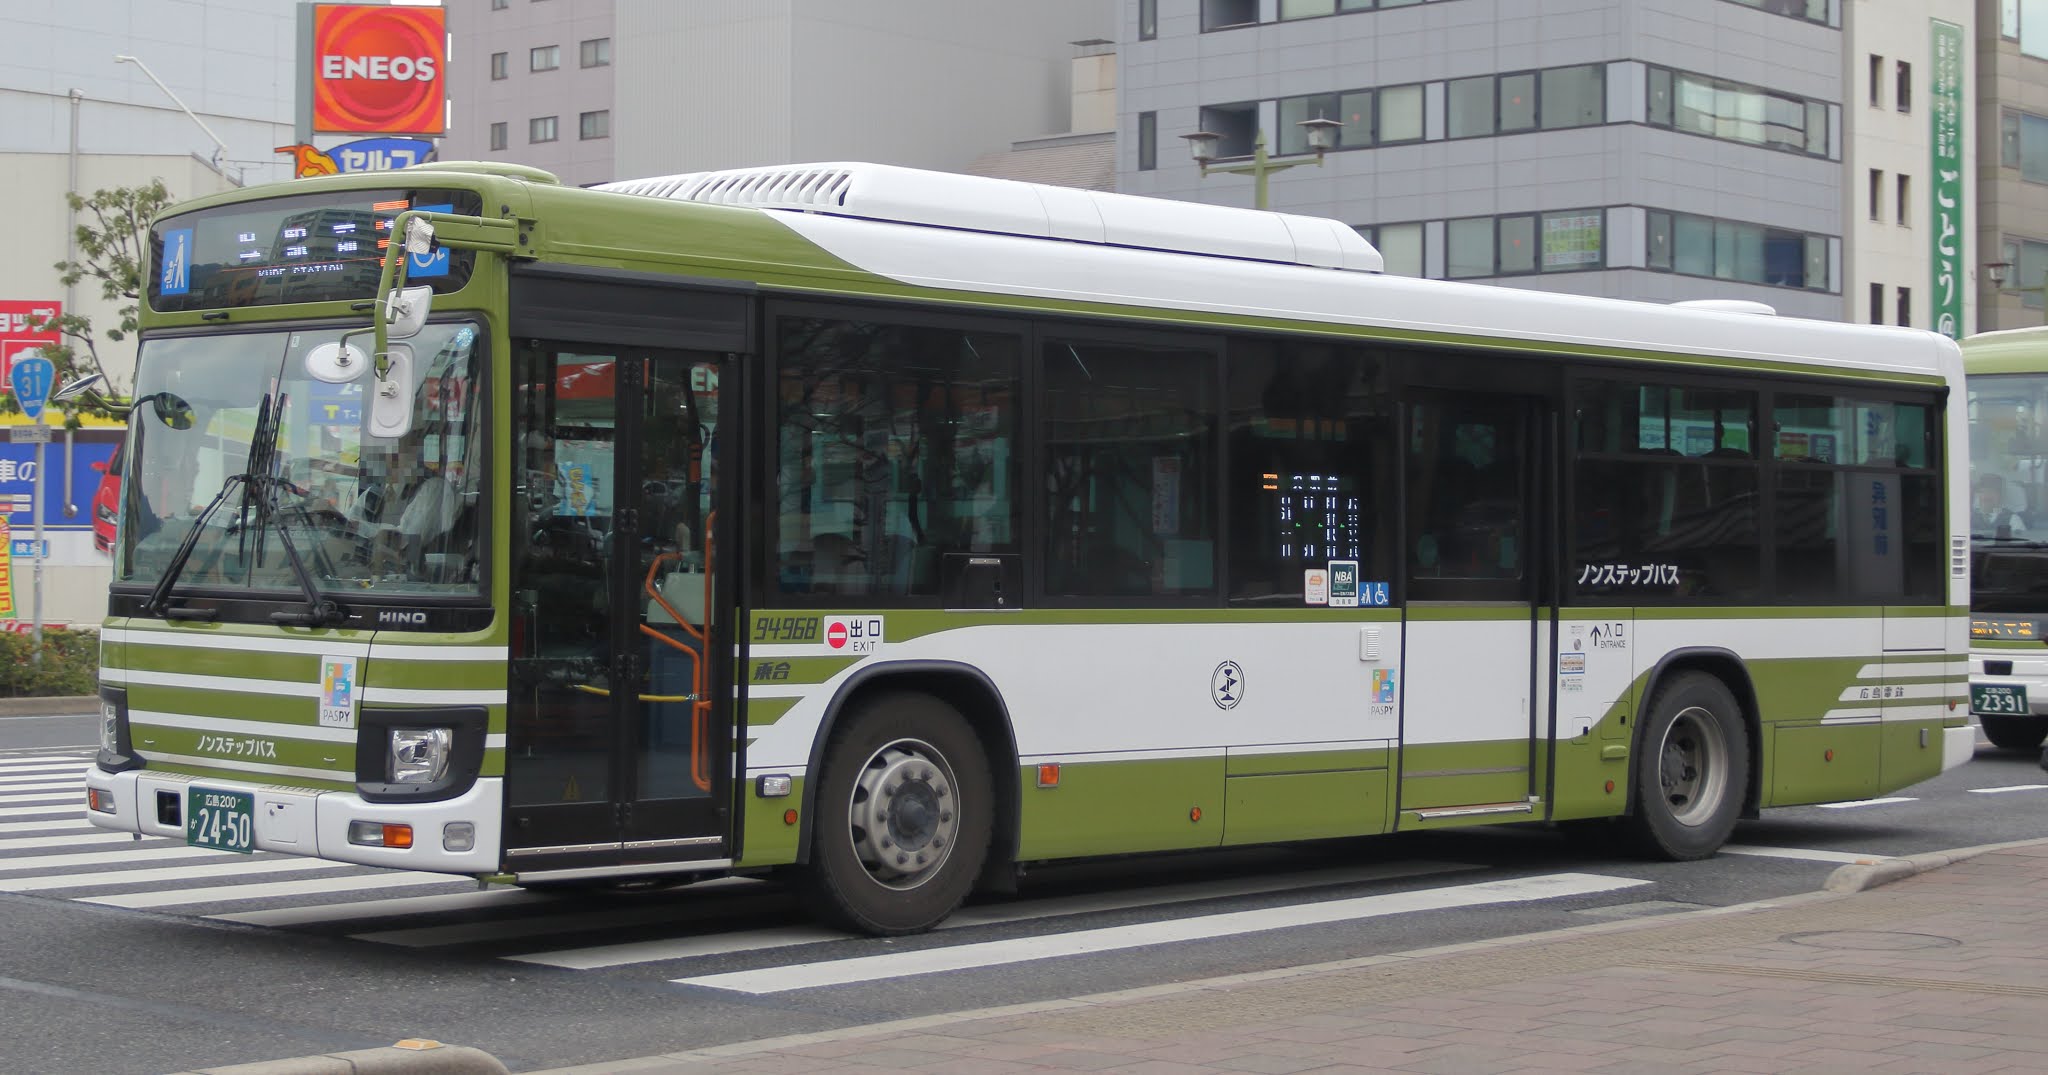 広島のバス 広電バス 広島0か2450